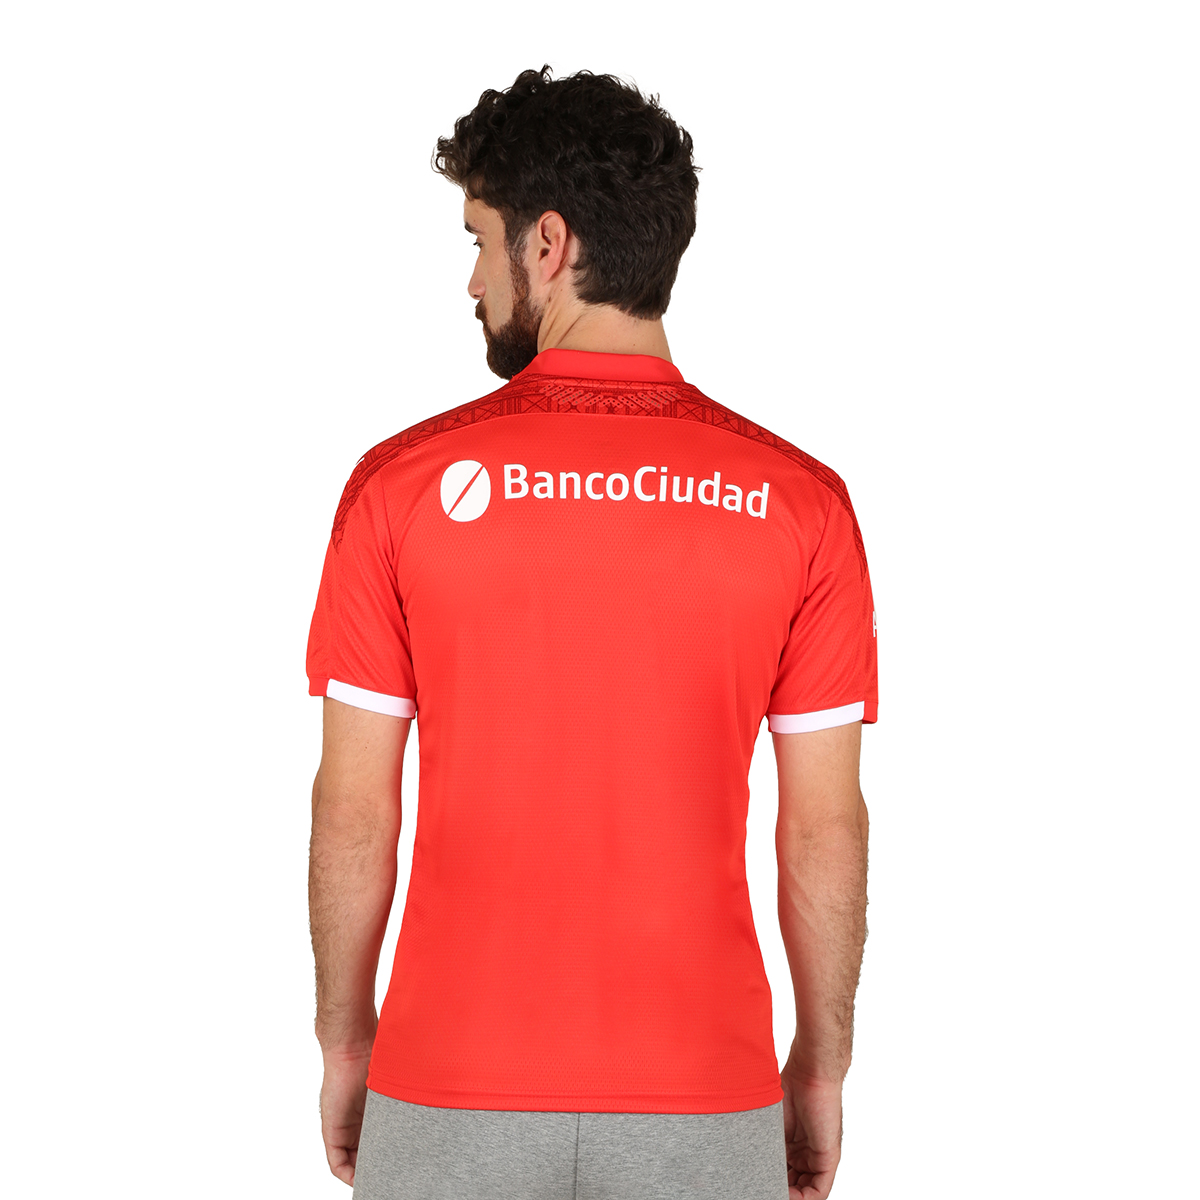 Camiseta Puma Independiente Home 2020/21,  image number null